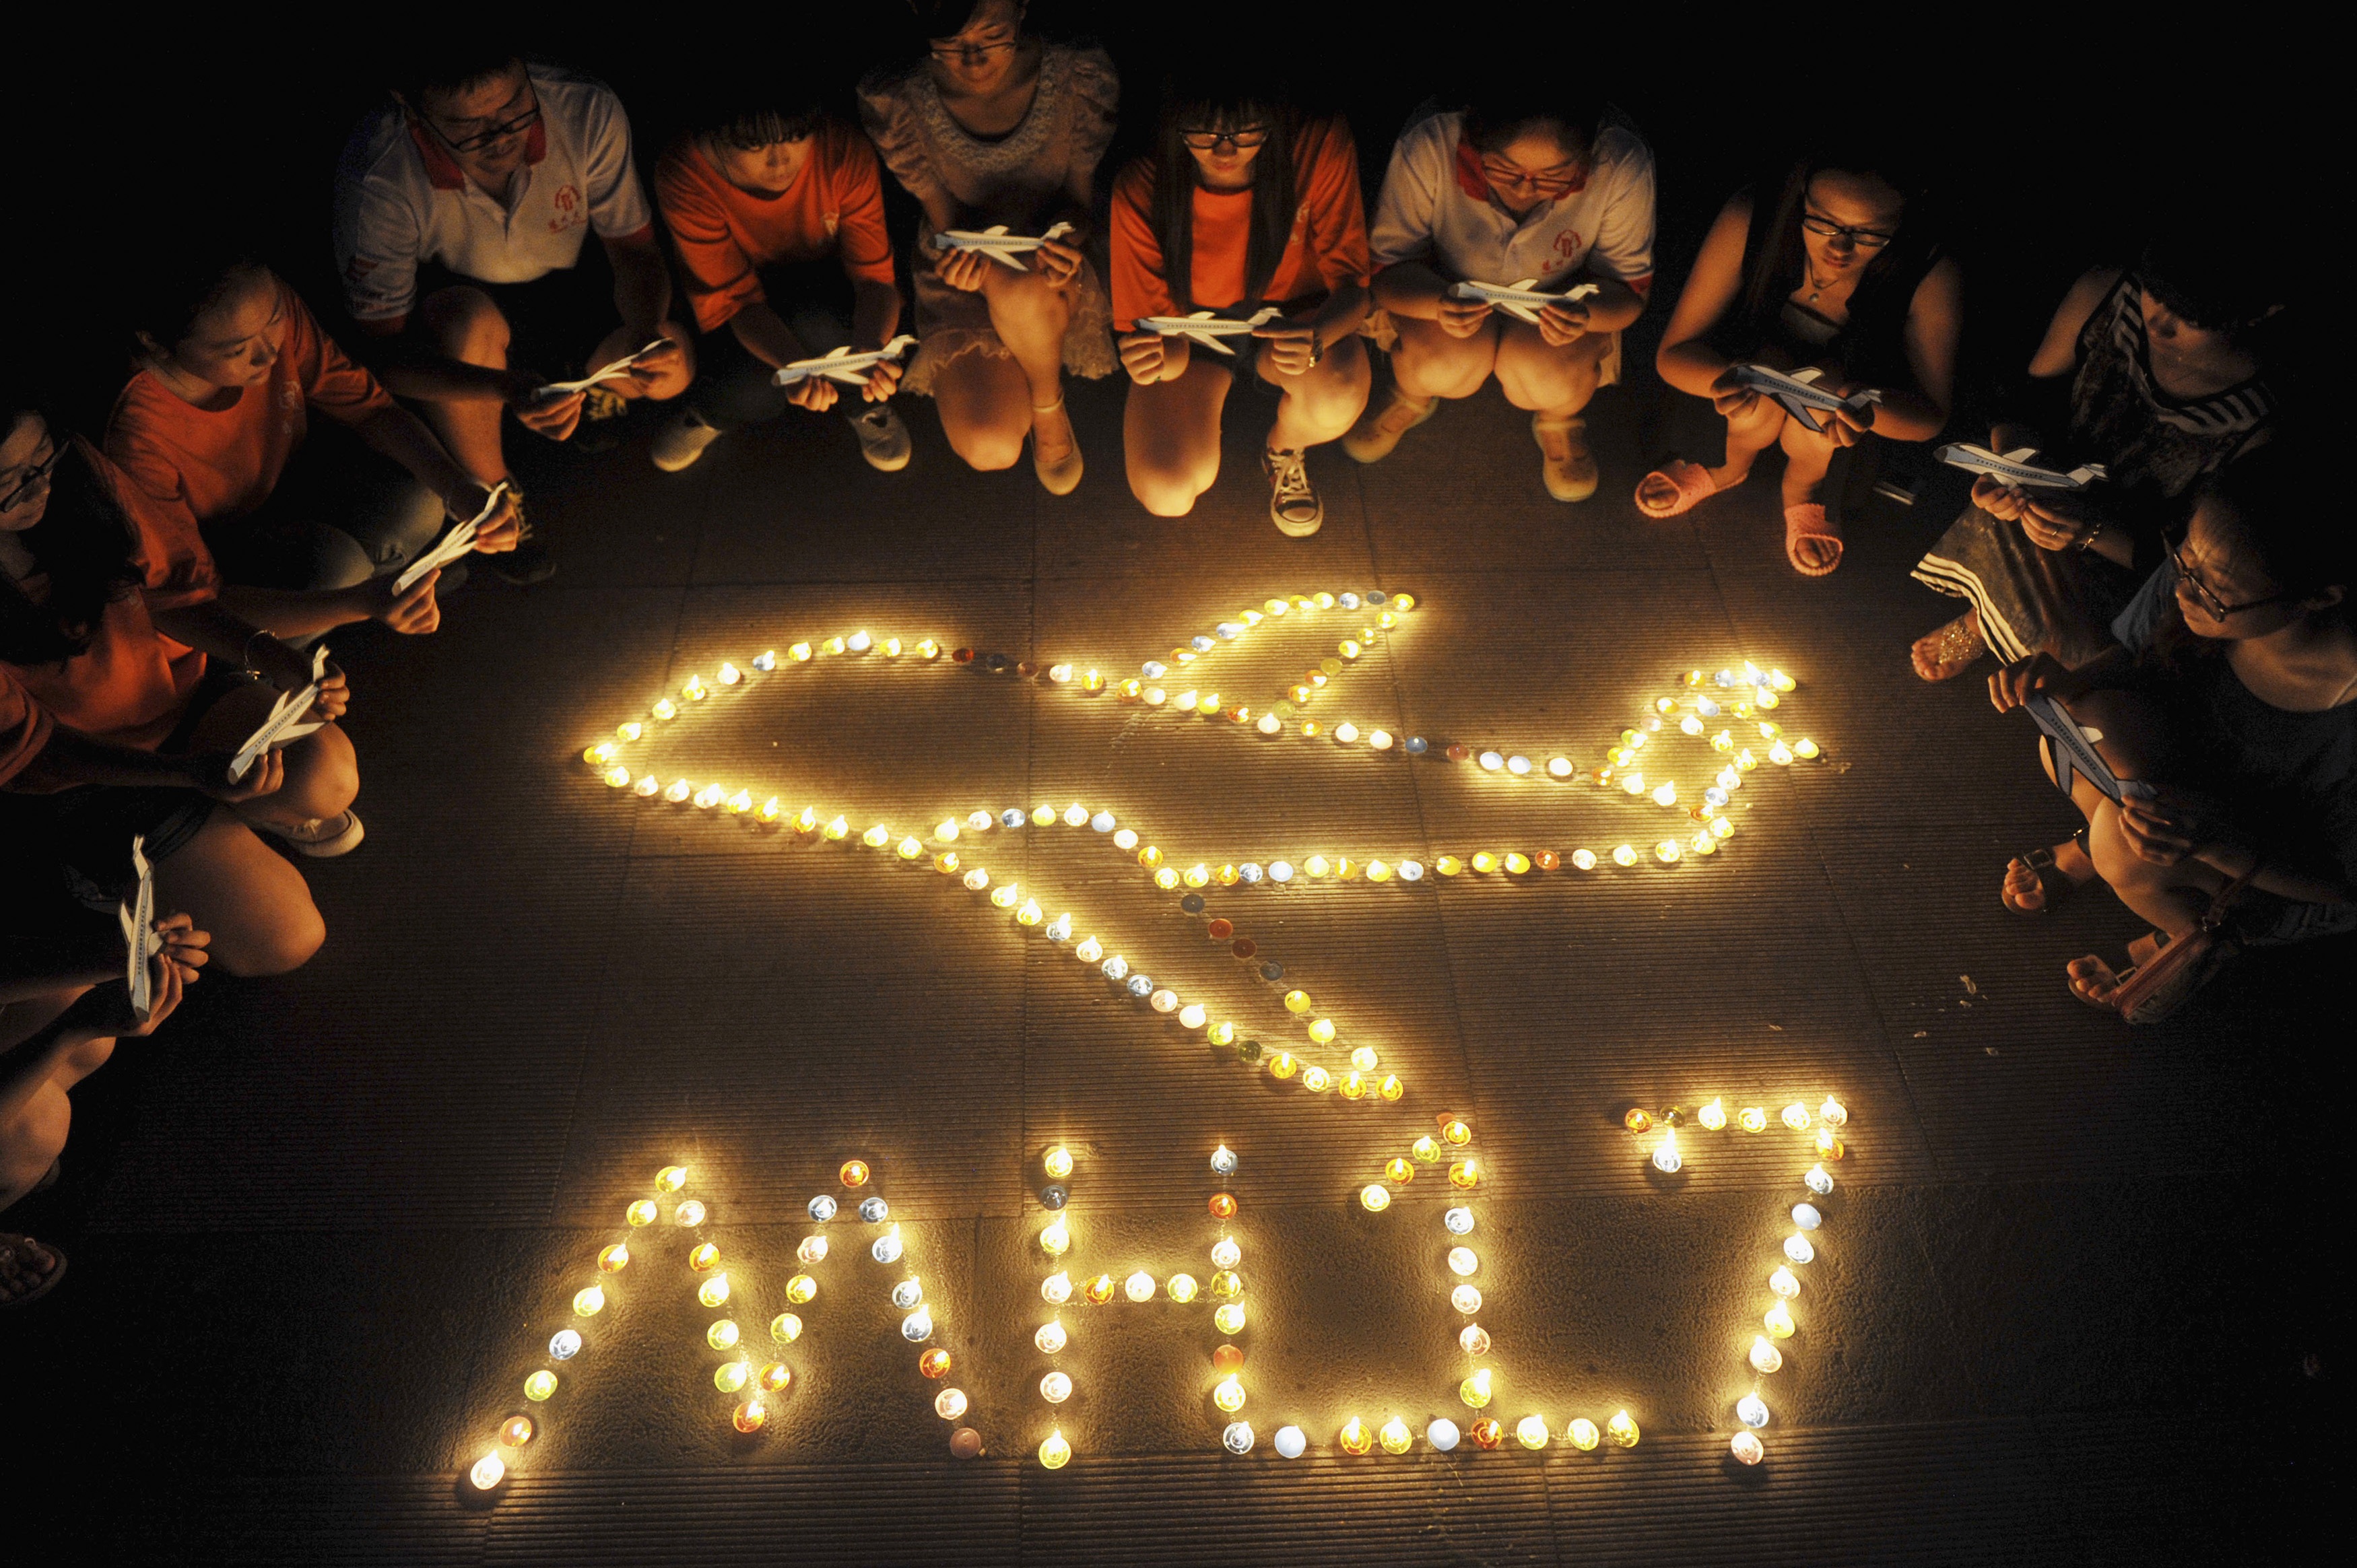 Homenaje al avión MH17 derribado por un misil en Ucrania
CHINA STRINGER NETWORK / REUT
